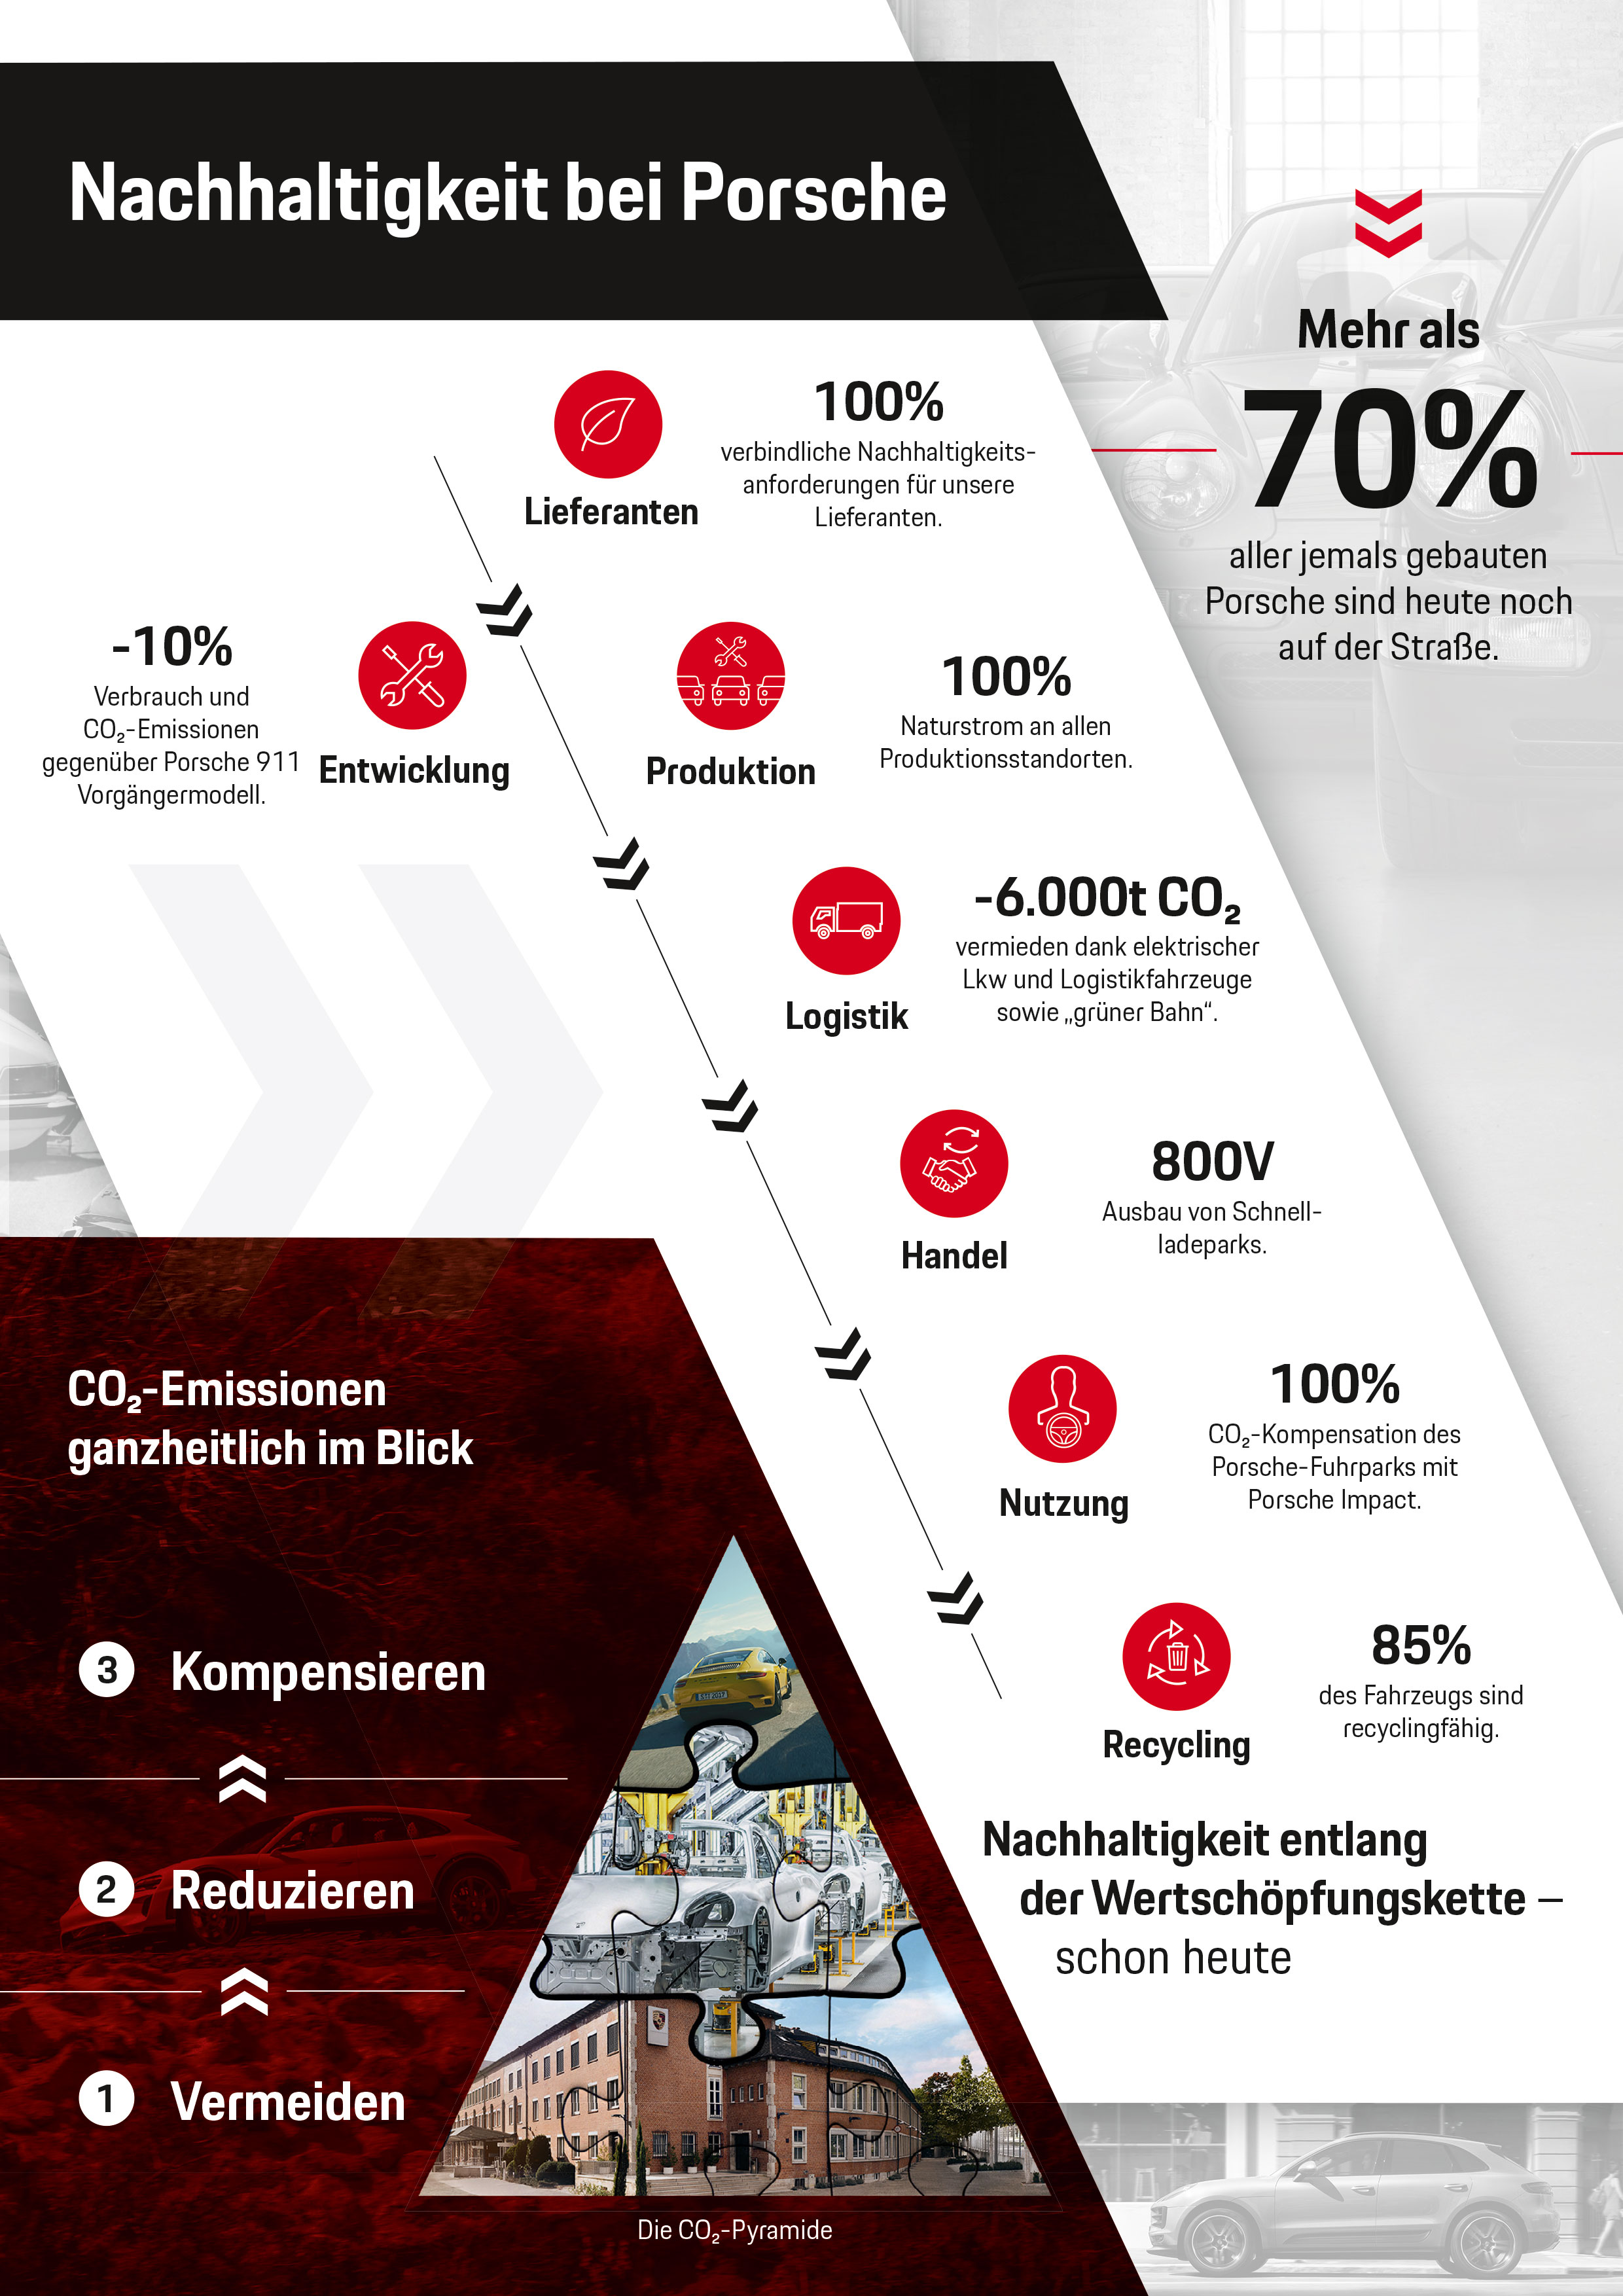 Nachhaltigkeit bei Porsche, Infografik, 2018, Porsche AG